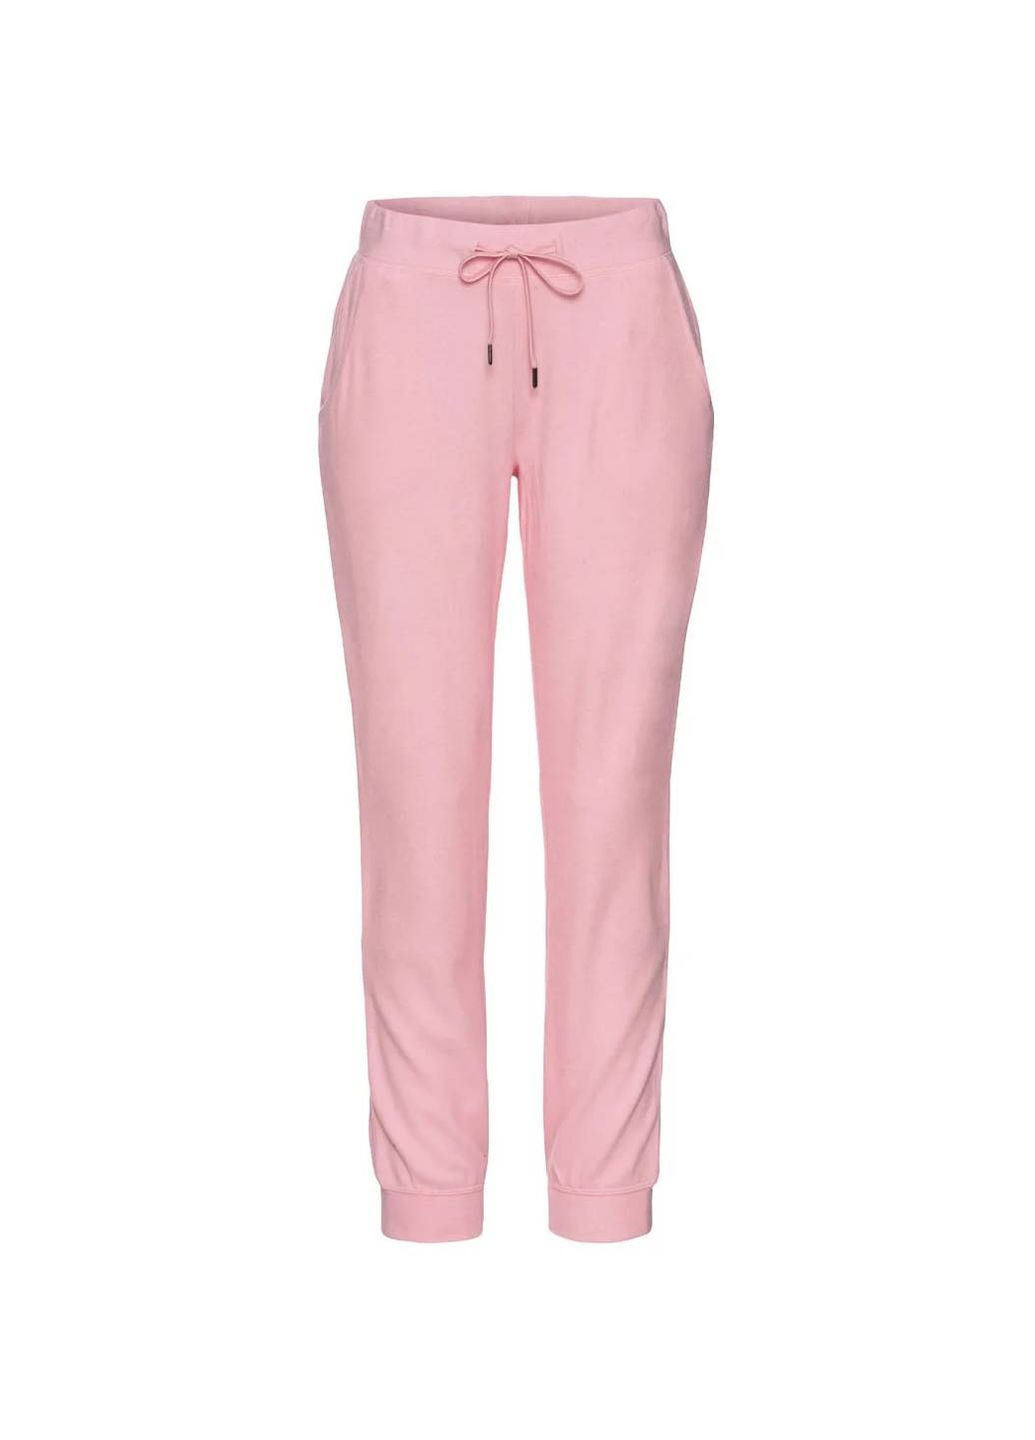 Розовые повседневный, домашние демисезонные брюки Esmara